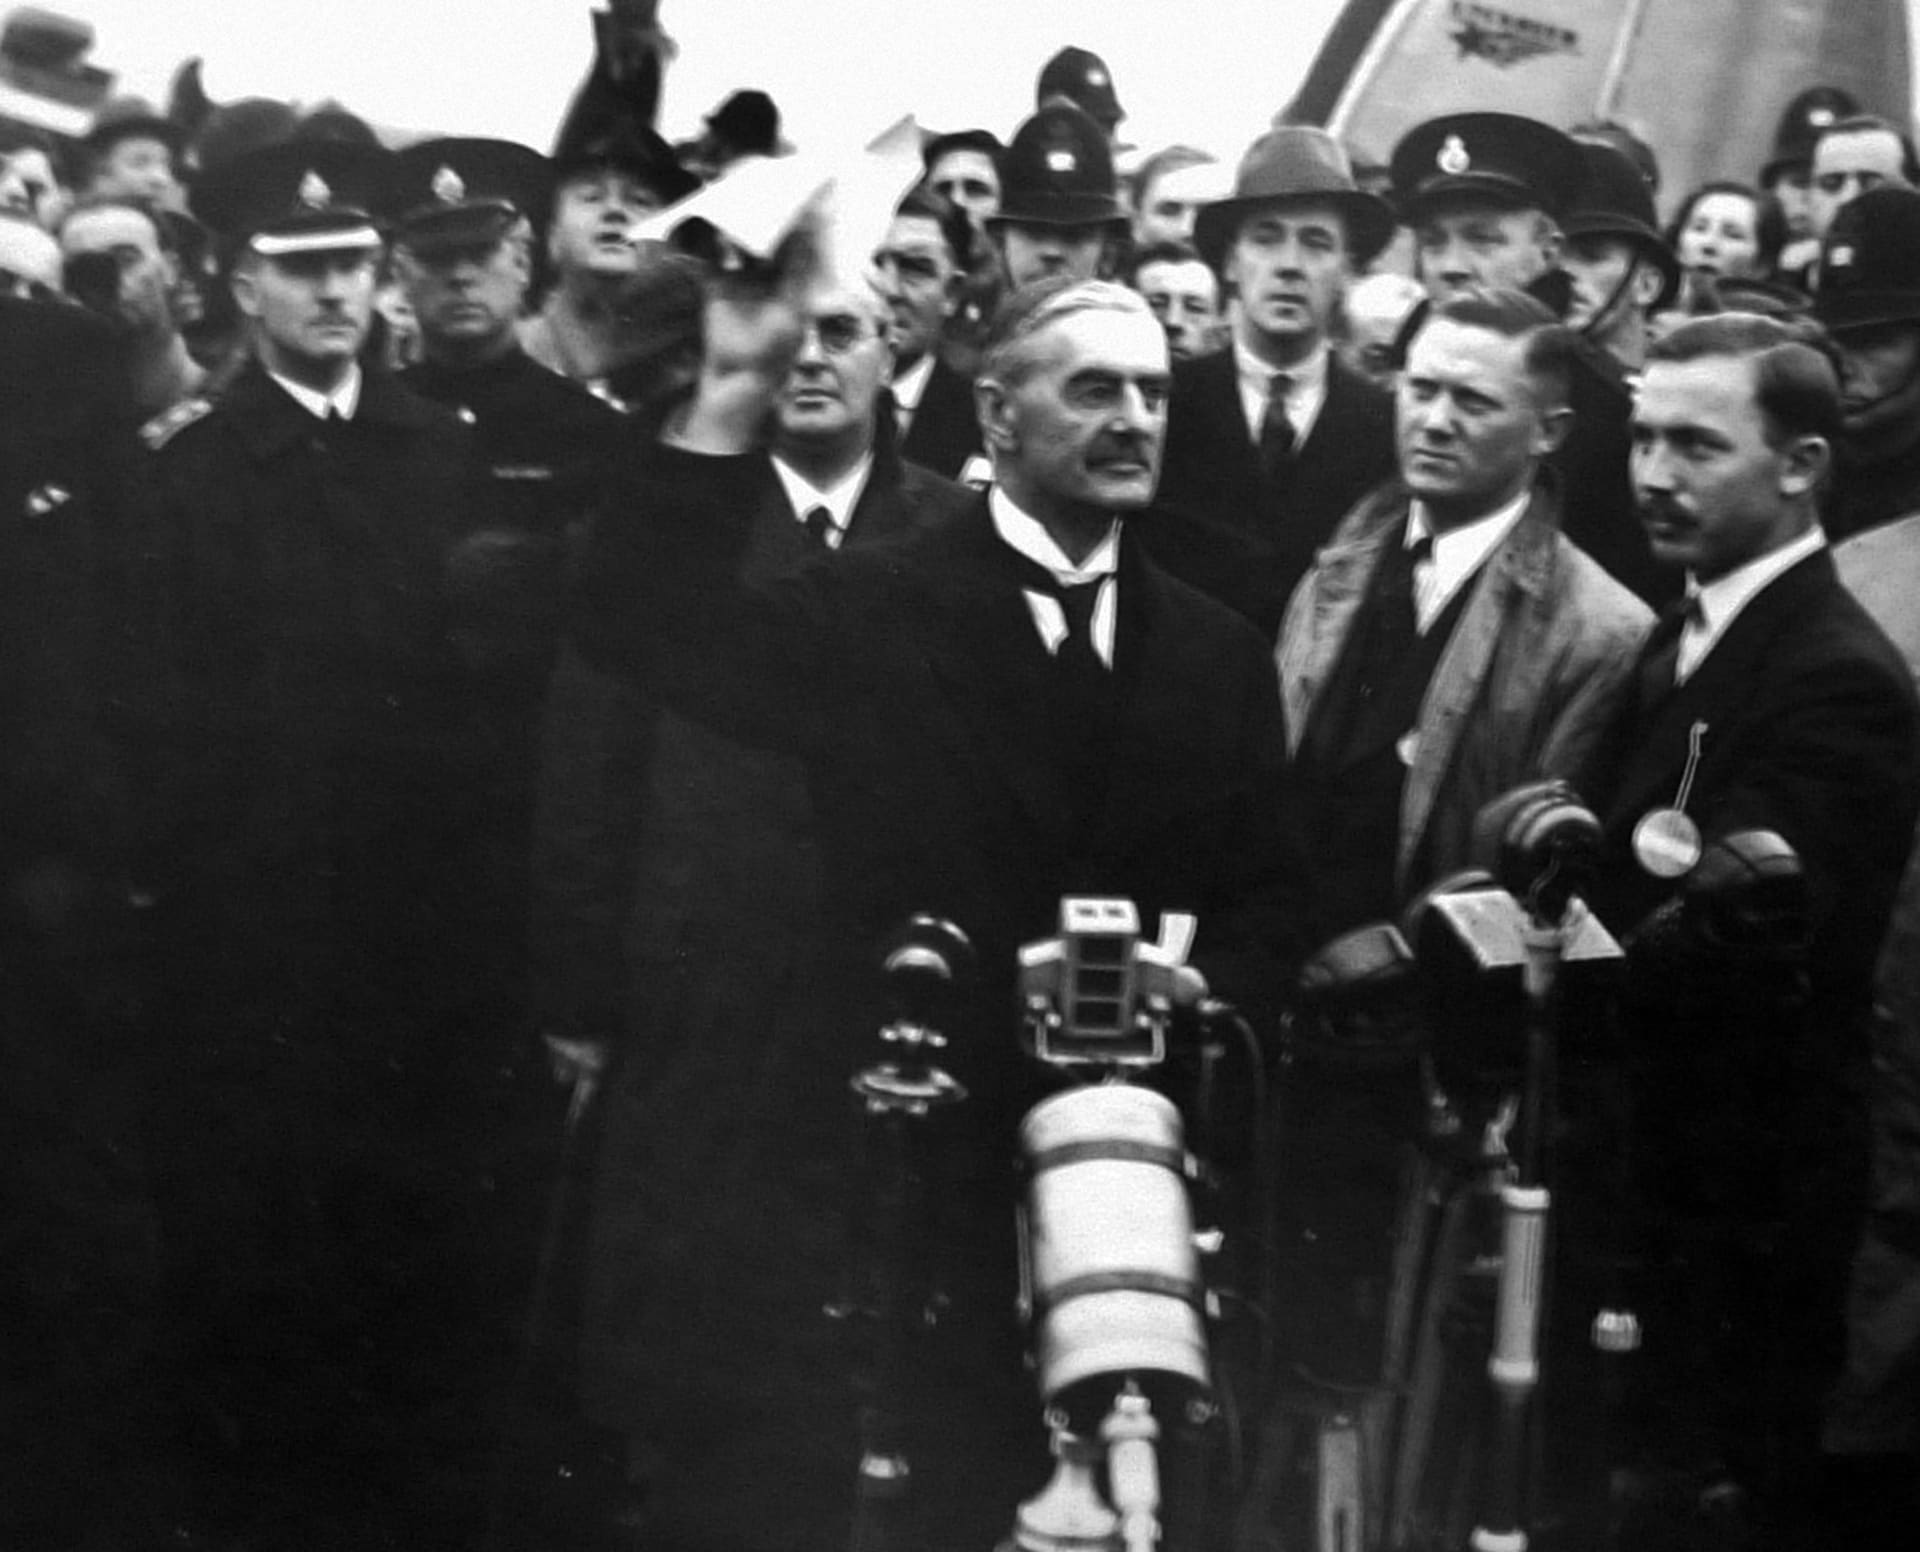 Chamberlain po návratu do země prohlašoval, že dohoda zajistila „mír pro naši dobu“.